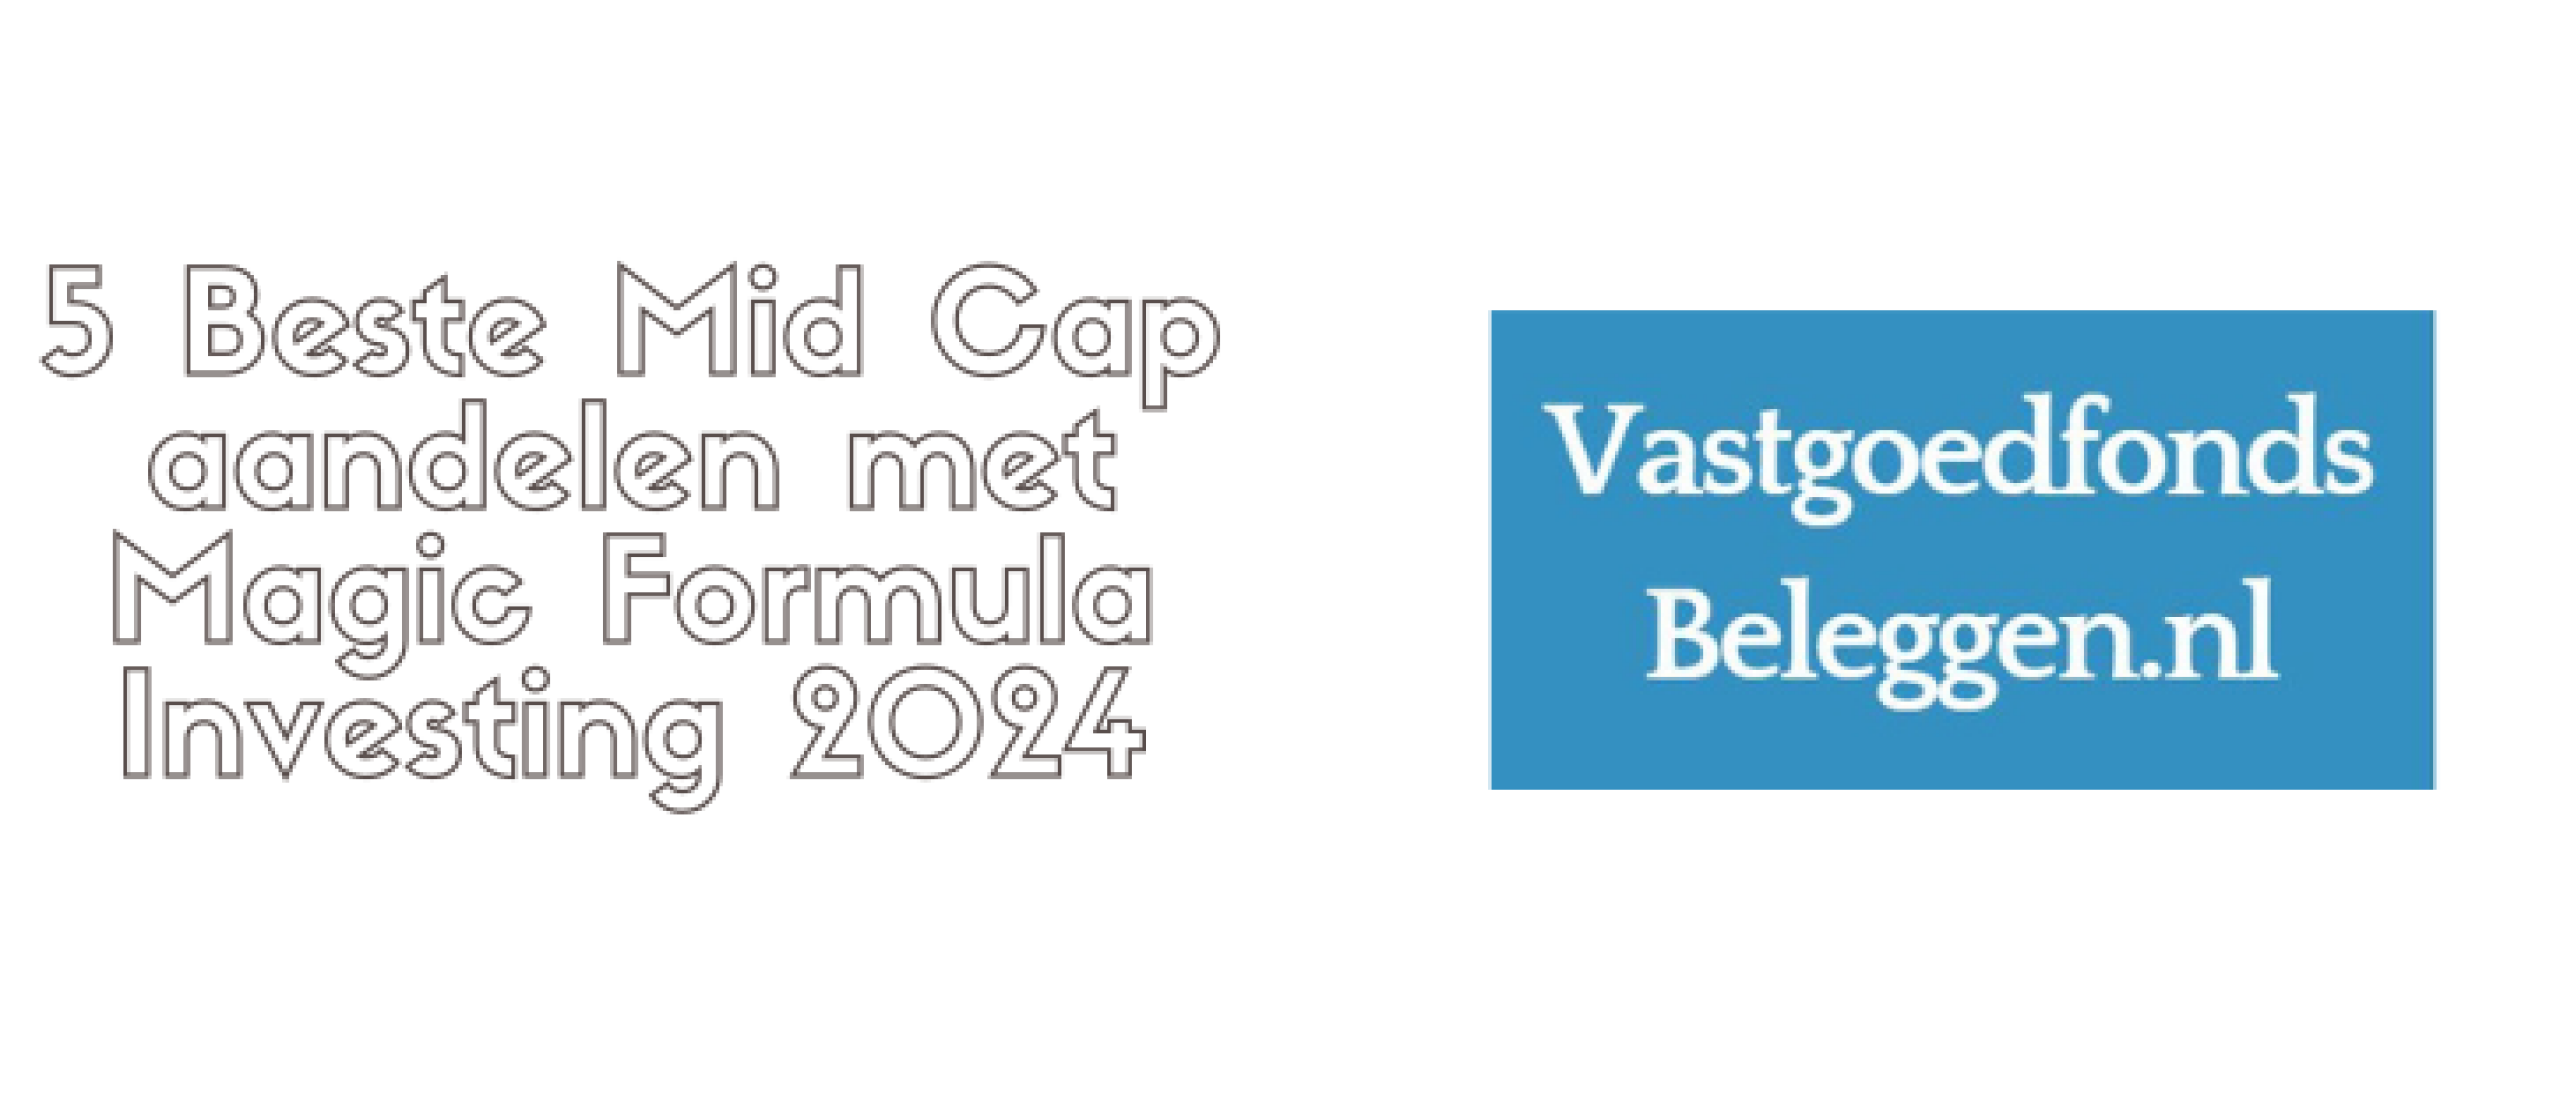 5 Beste Mid Cap aandelen met Magic Formula Investing 2024